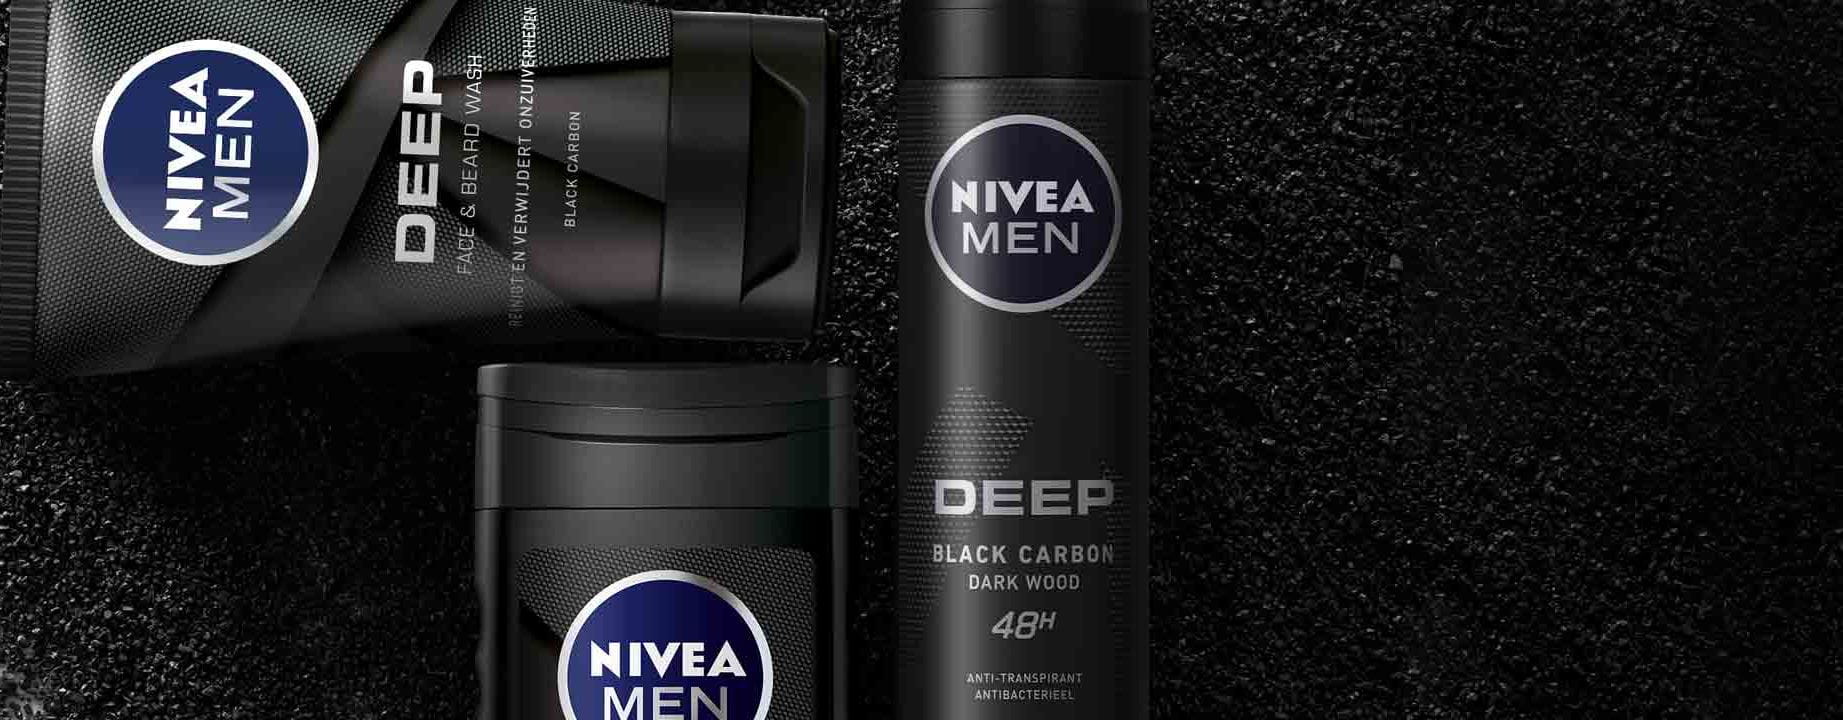 op tijd Vlekkeloos Ontwaken NIVEA MEN: alles voor mannen| NIVEA